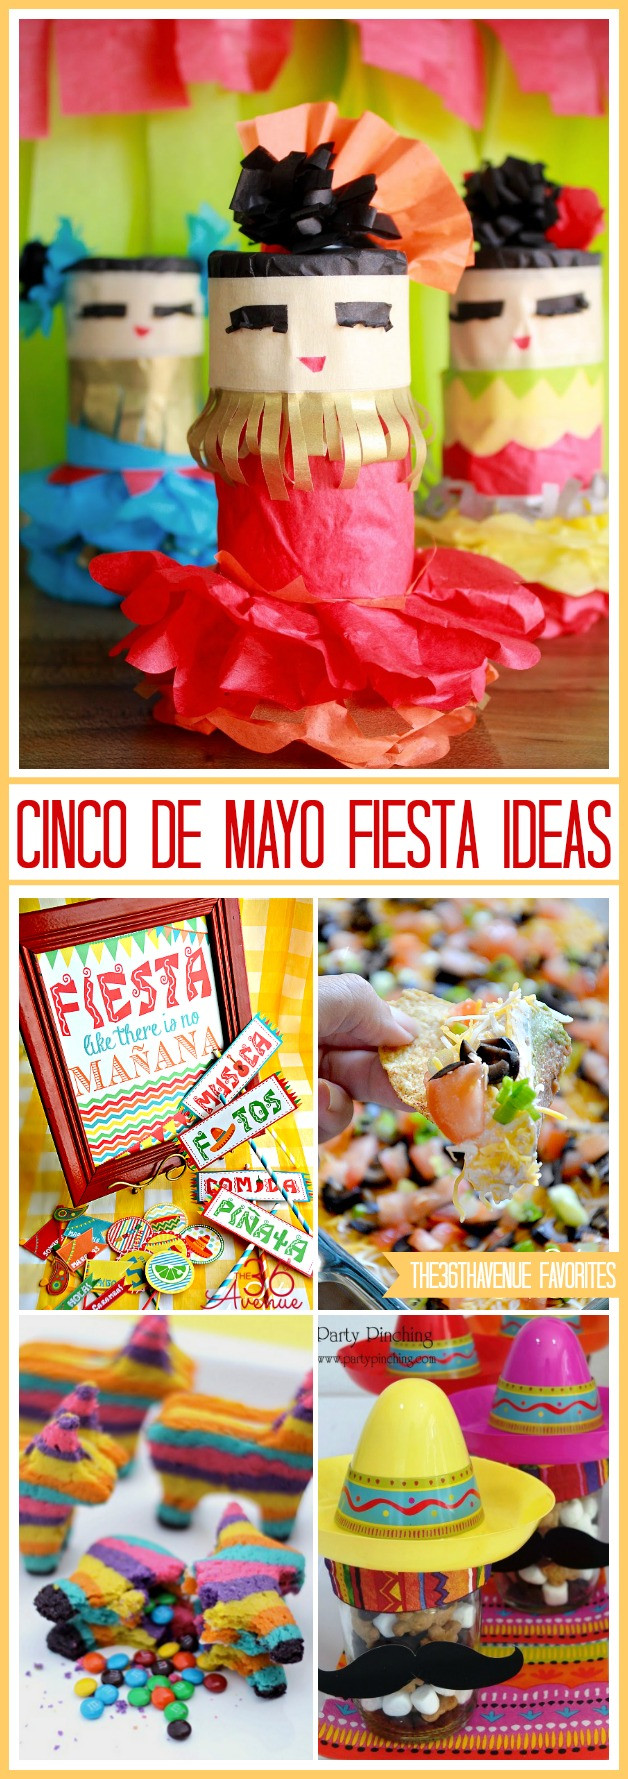 Cinco De Mayo Ideas
 Cinco de Mayo Party Ideas